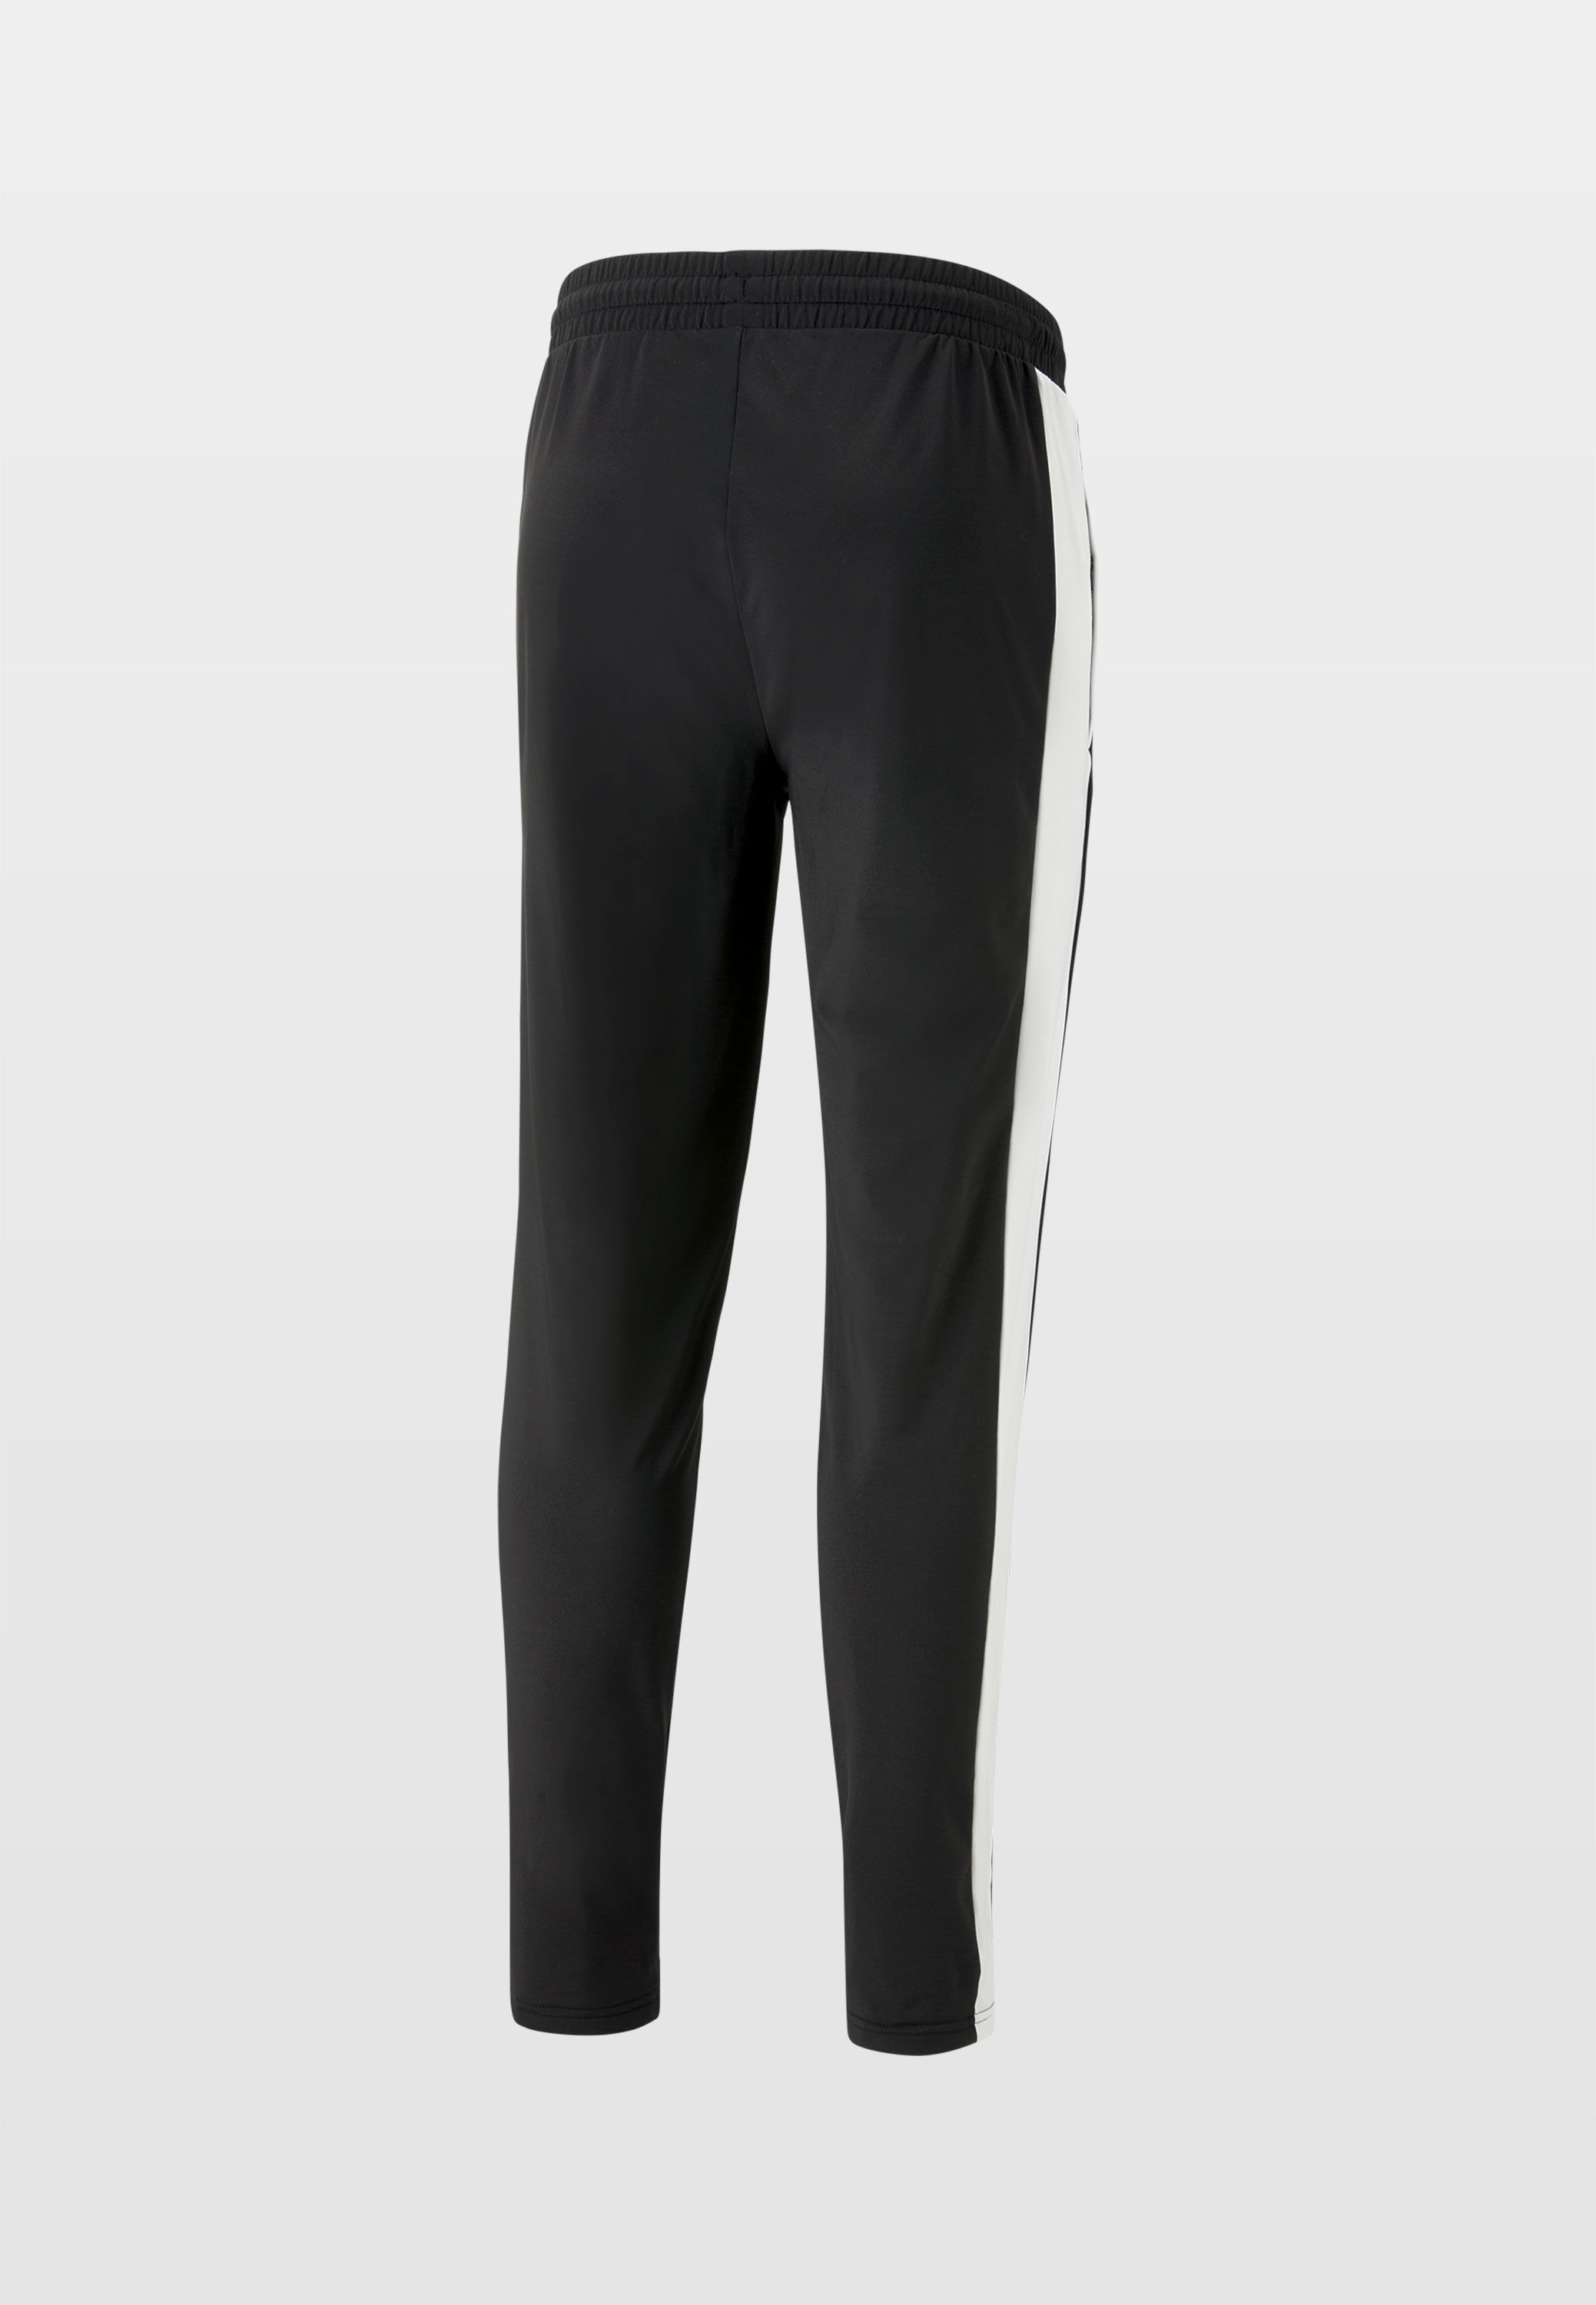 Buy Puma Black Cotton Regular Fit Trackpants for Mens Online @ Tata CLiQ